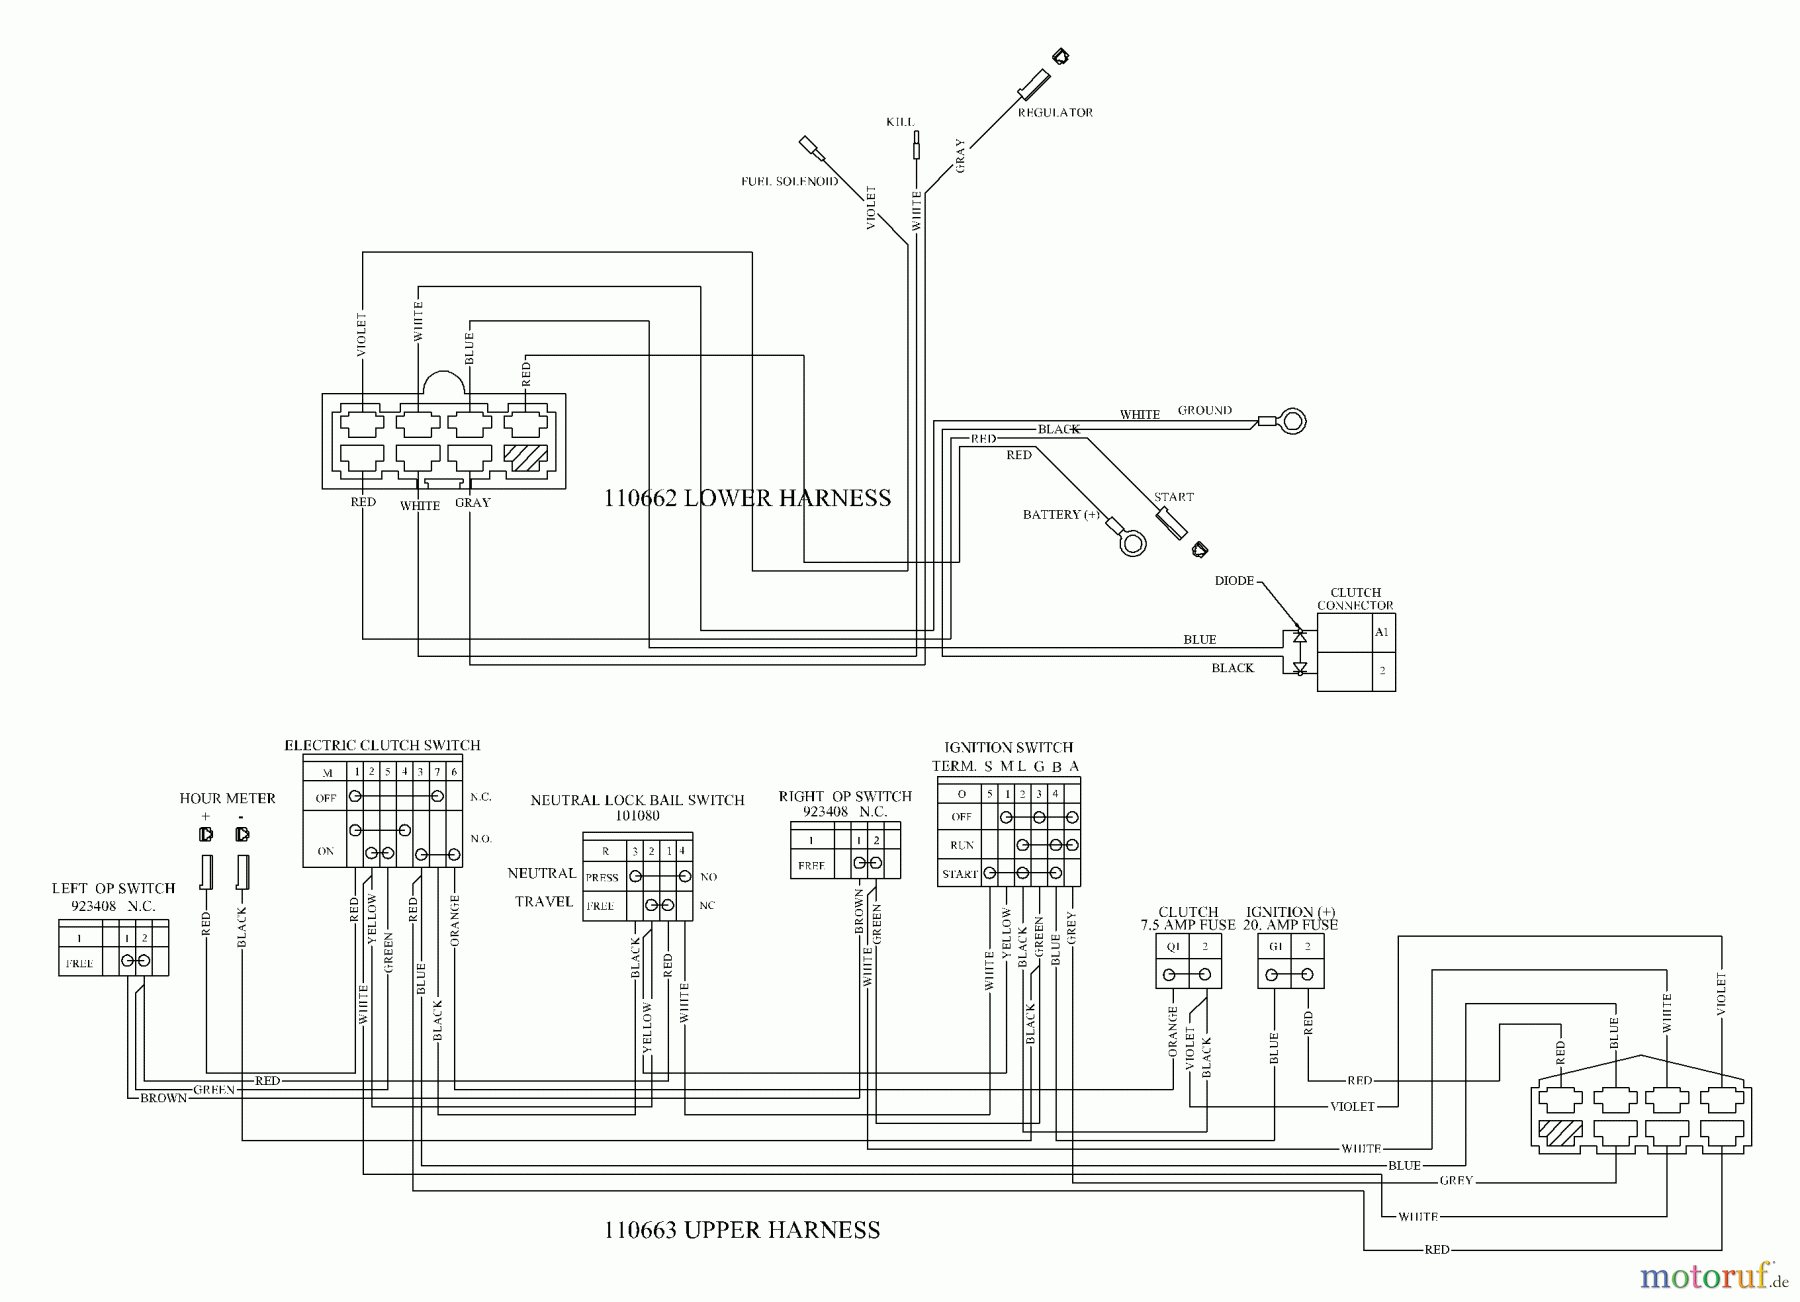  Husqvarna Rasenmäher für Großflächen WH 5219EFQ (968999253) - Husqvarna Wide-Area Walk-Behind Mower (2005-08 to 2006-11) Wiring Schematic